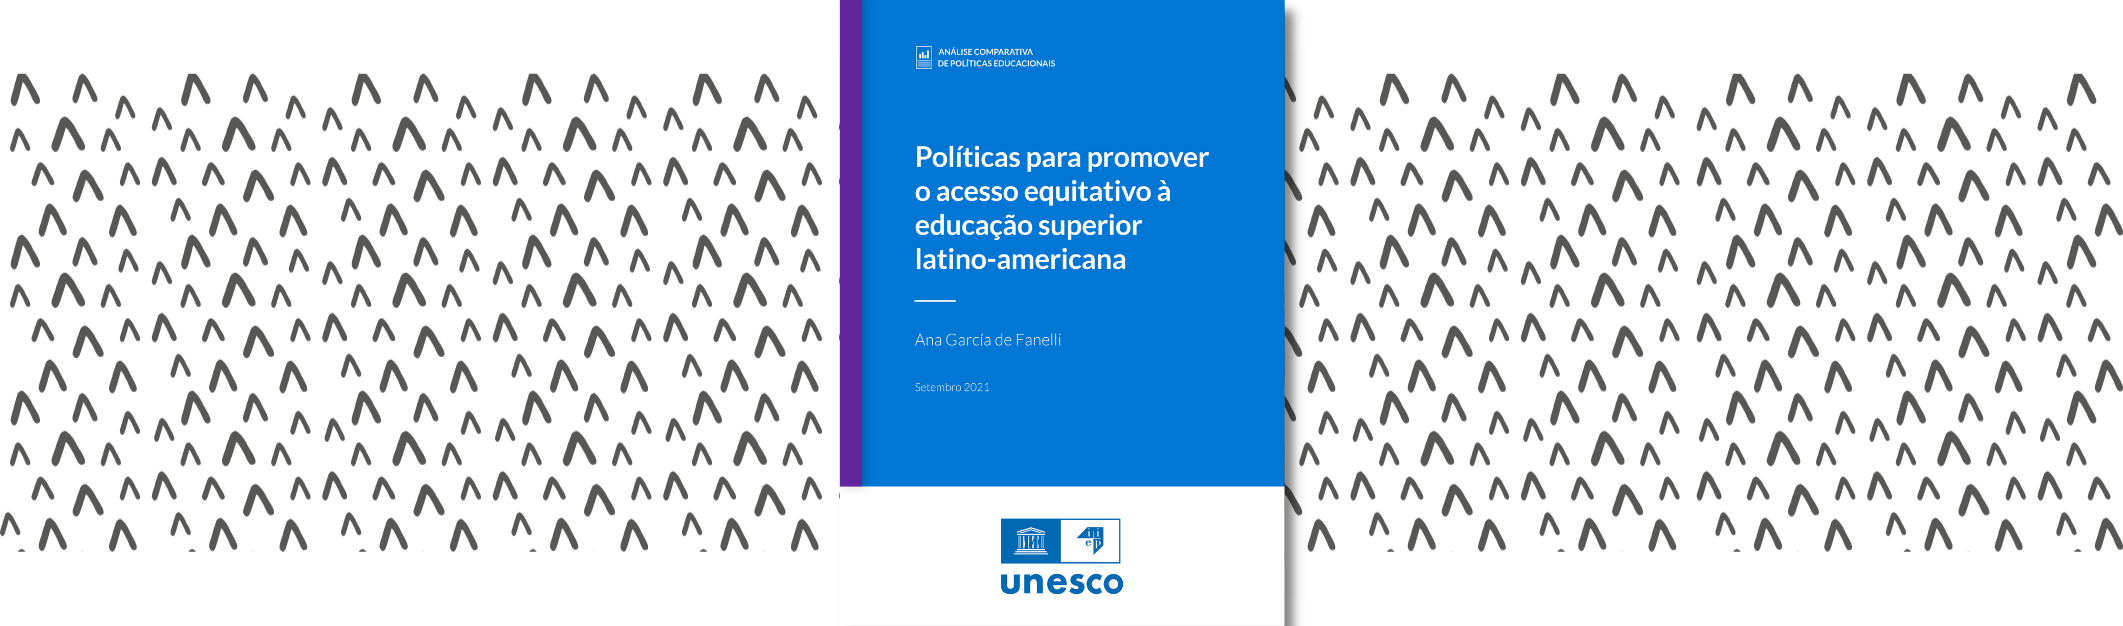 Políticas para promover o acesso equitativo à educação superior latino-americana